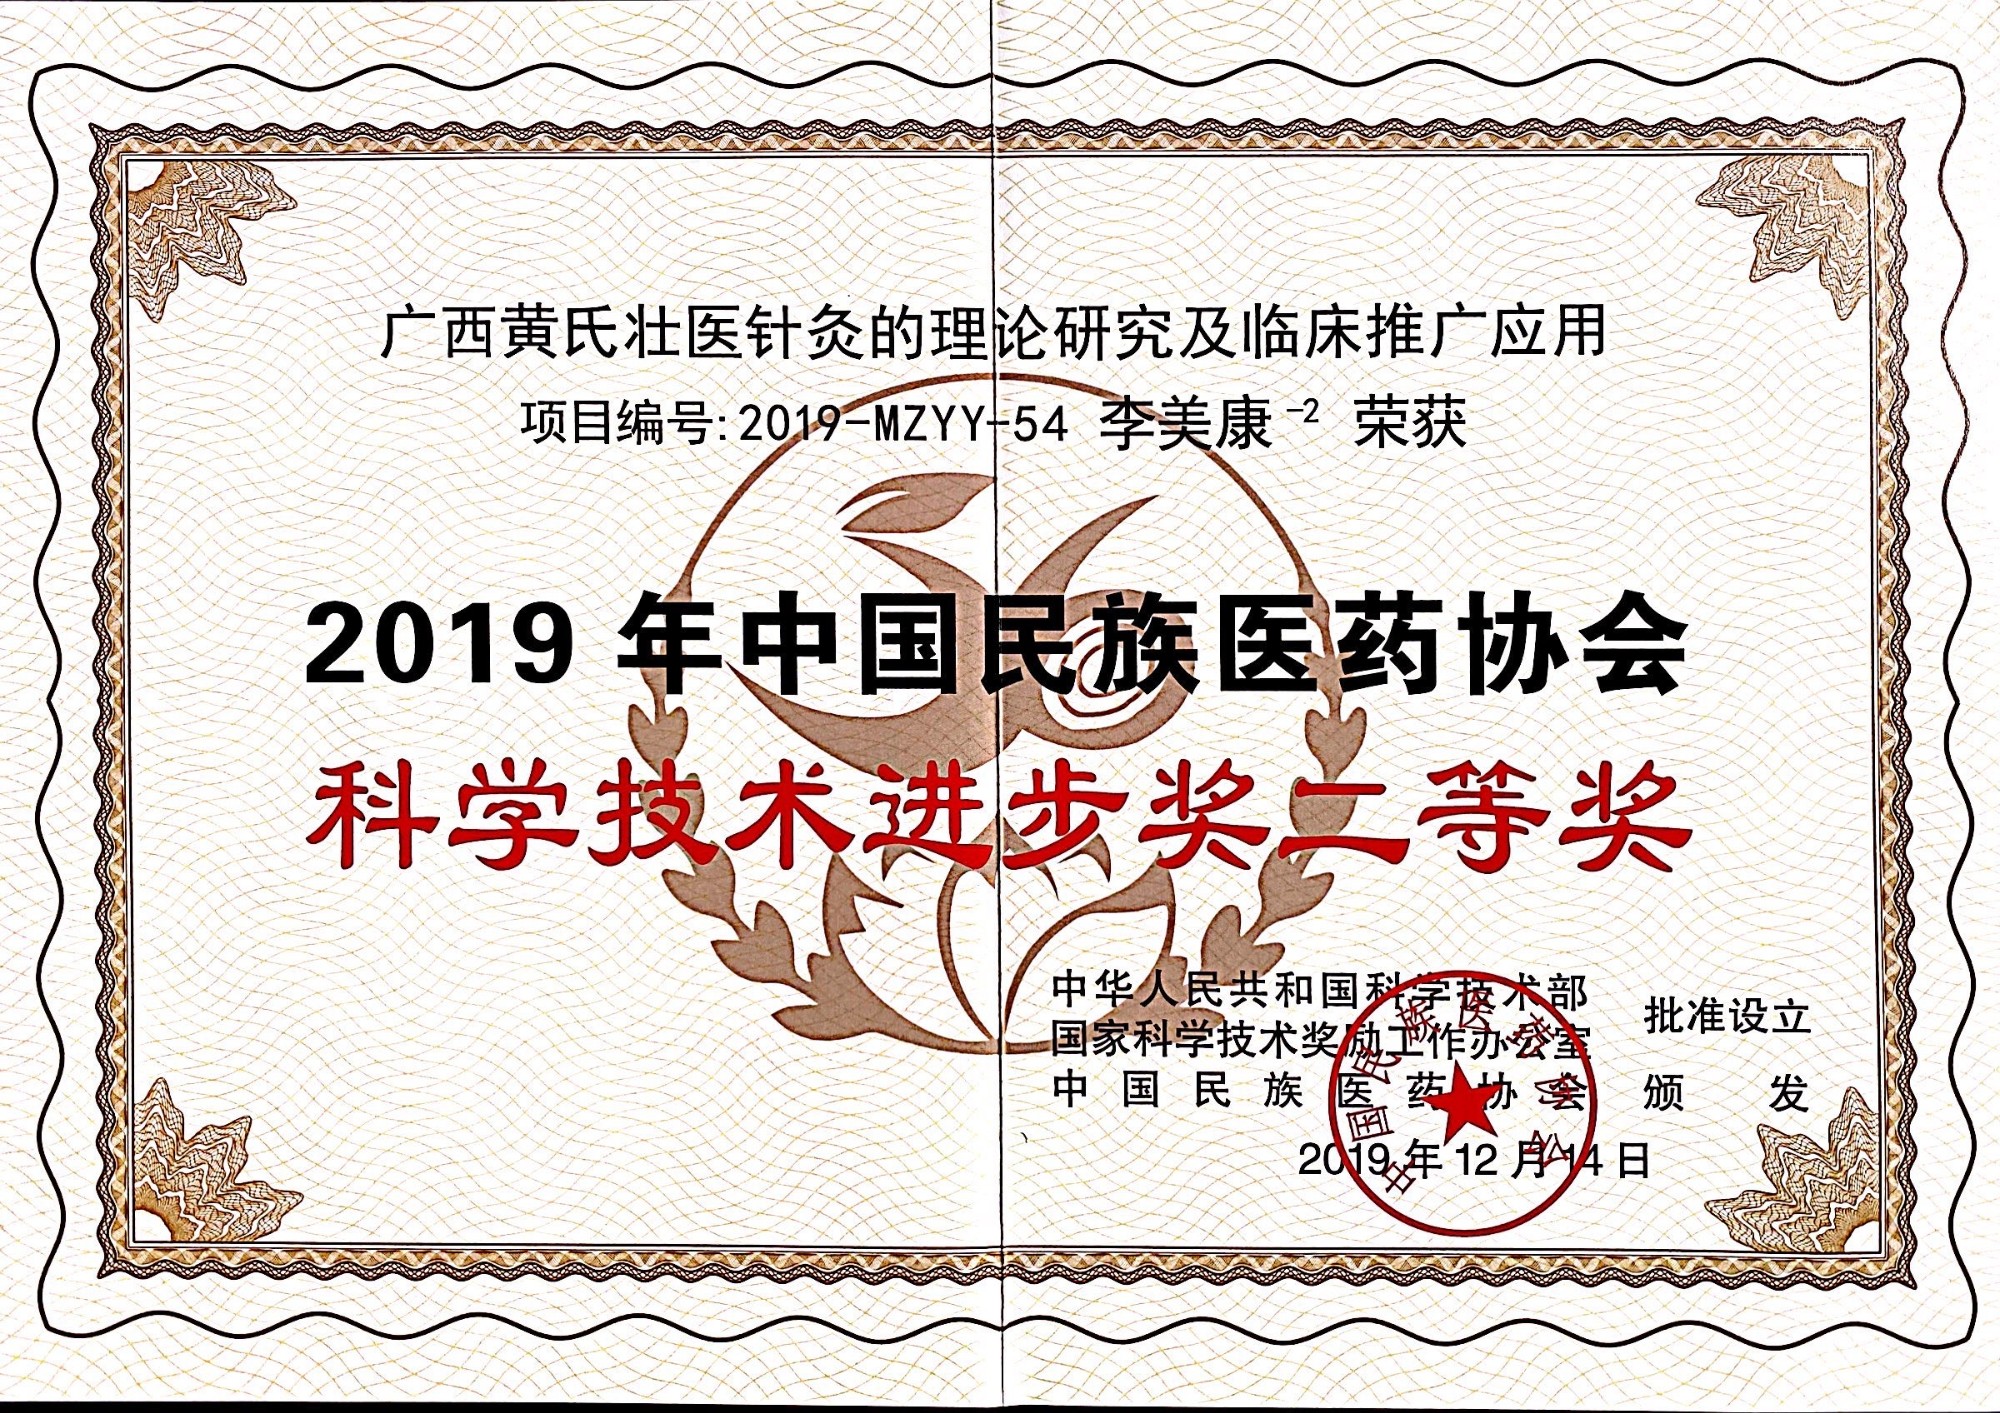 2019年工作室负责人李美康教授荣获中国民族医药协会科学技术进步奖二等奖